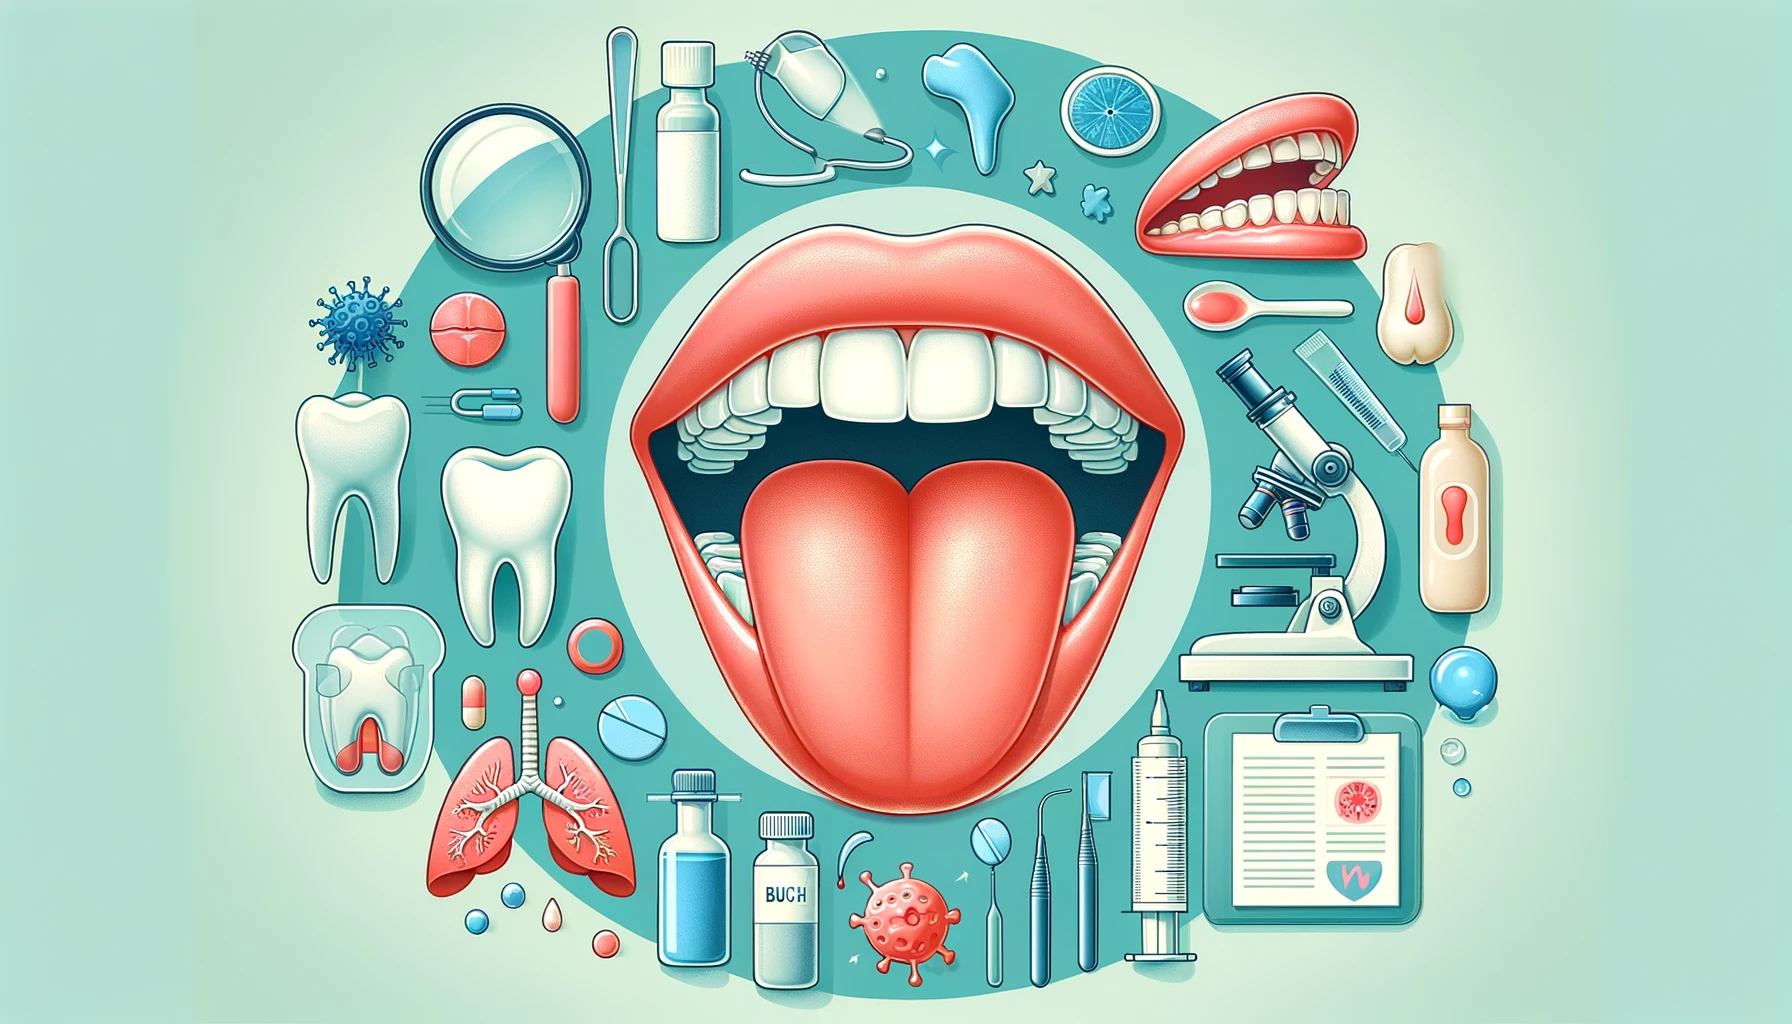 ¿Qué es la mancha en la lengua y por qué es importante?